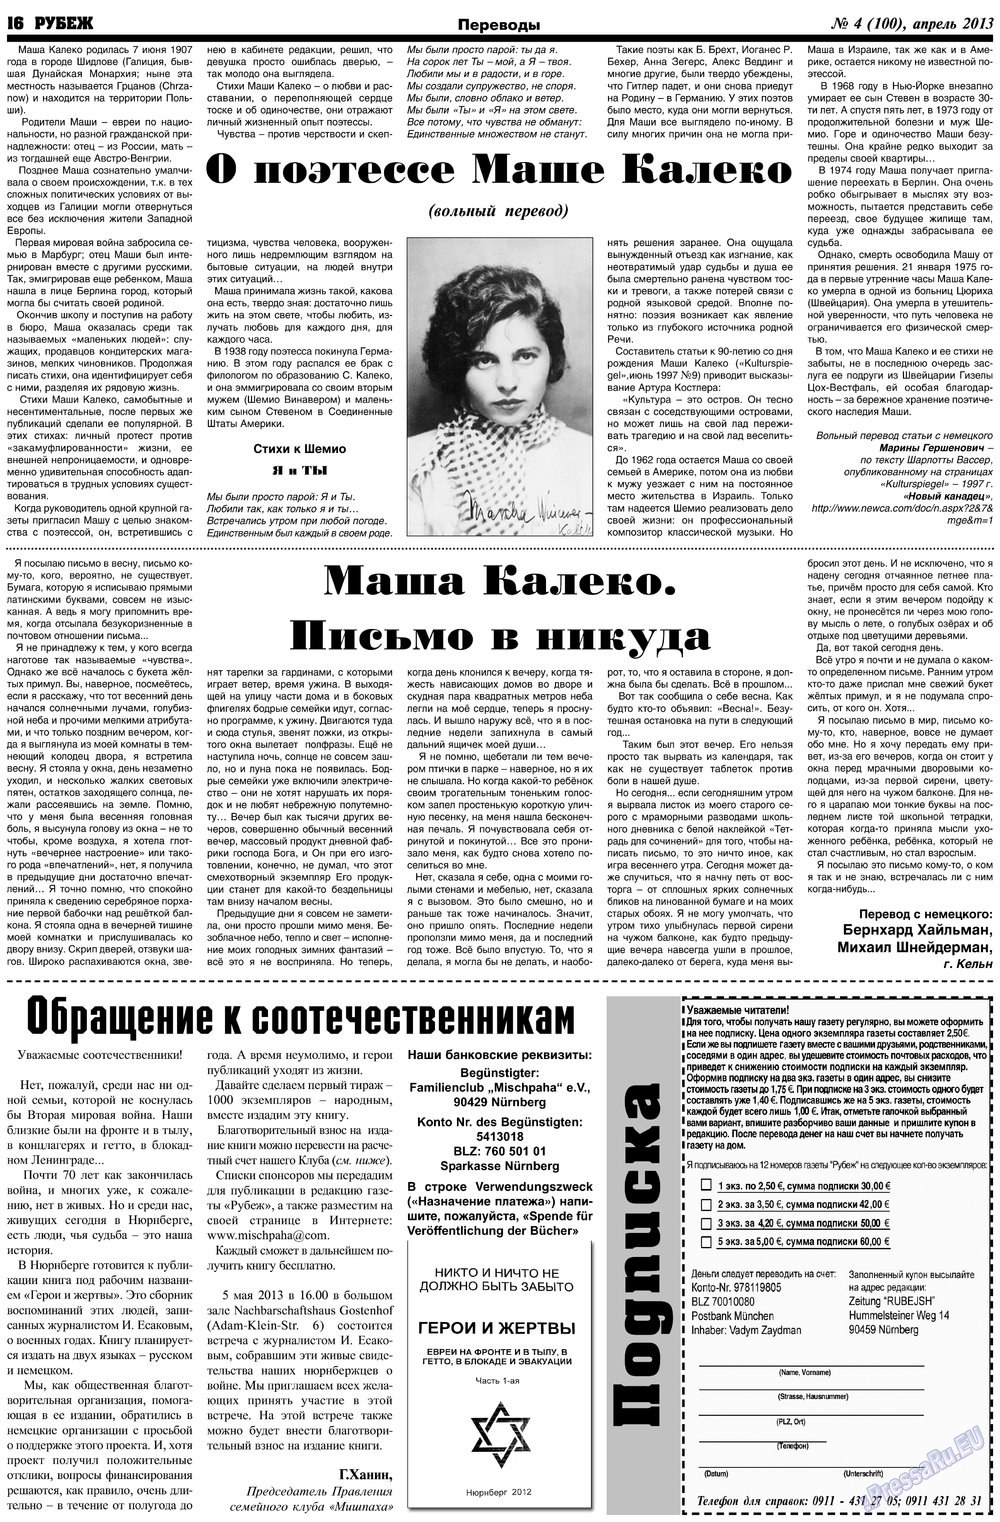 Рубеж (газета). 2013 год, номер 4, стр. 16